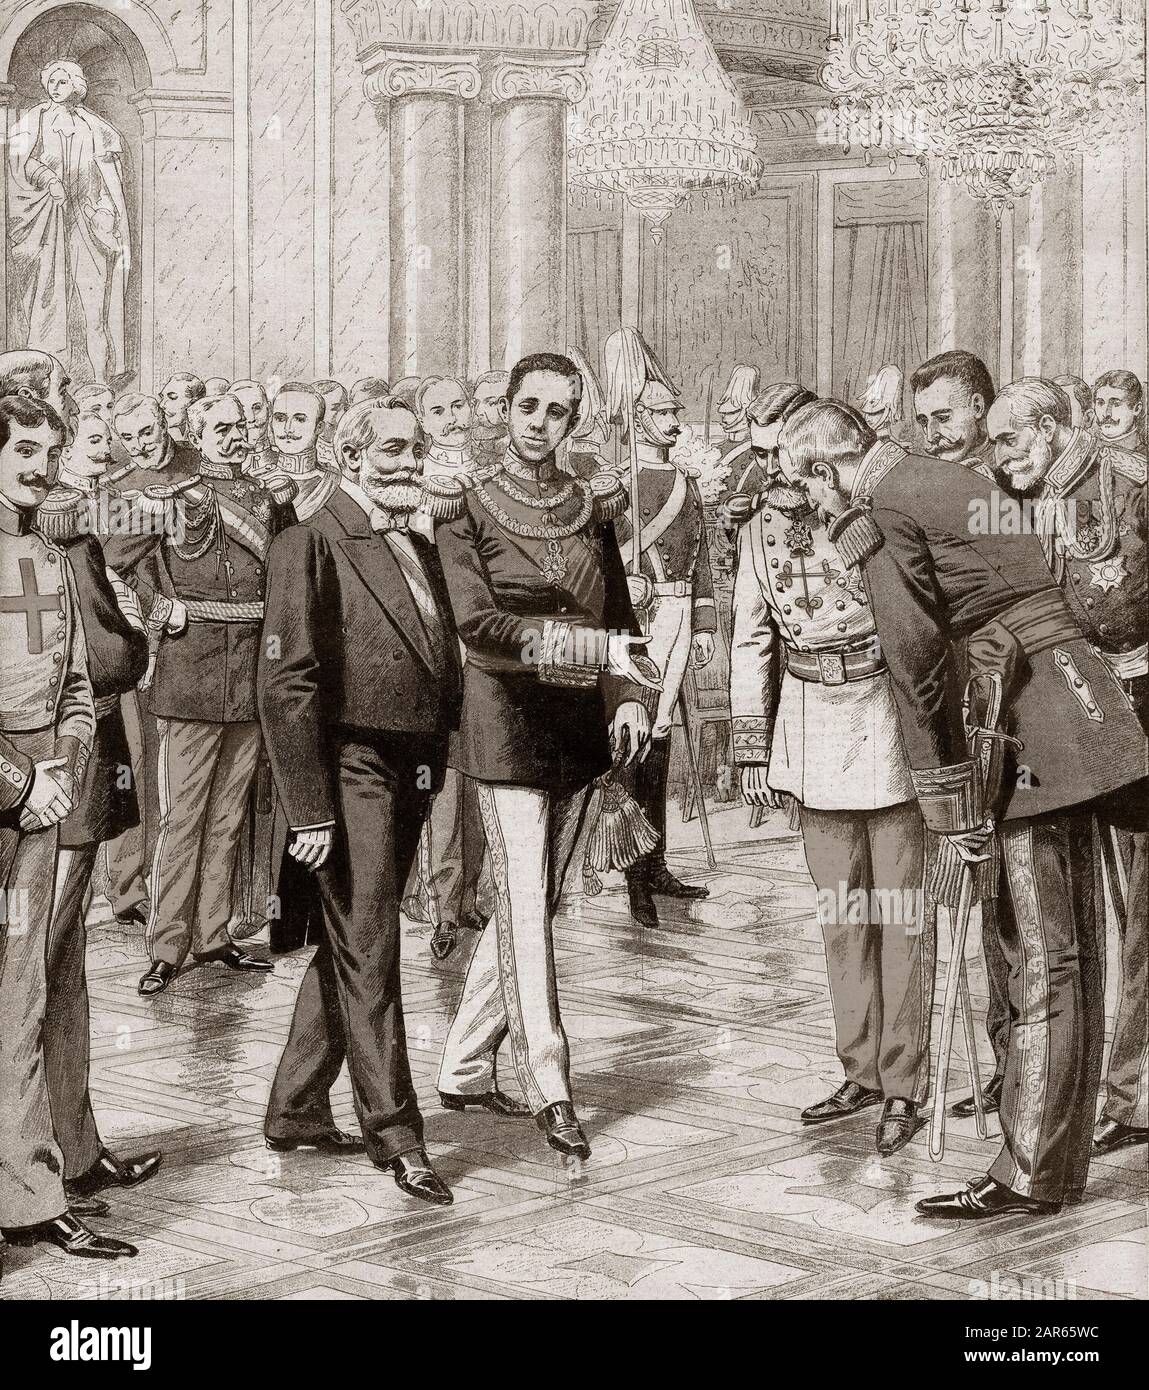 Le roi Alfonso XIII d'Espagne a présenté son tribunal au président Emile Loubet de France au Palais Royal de Madrid. Au Palais Royal De Madrid. Roi le d Banque D'Images